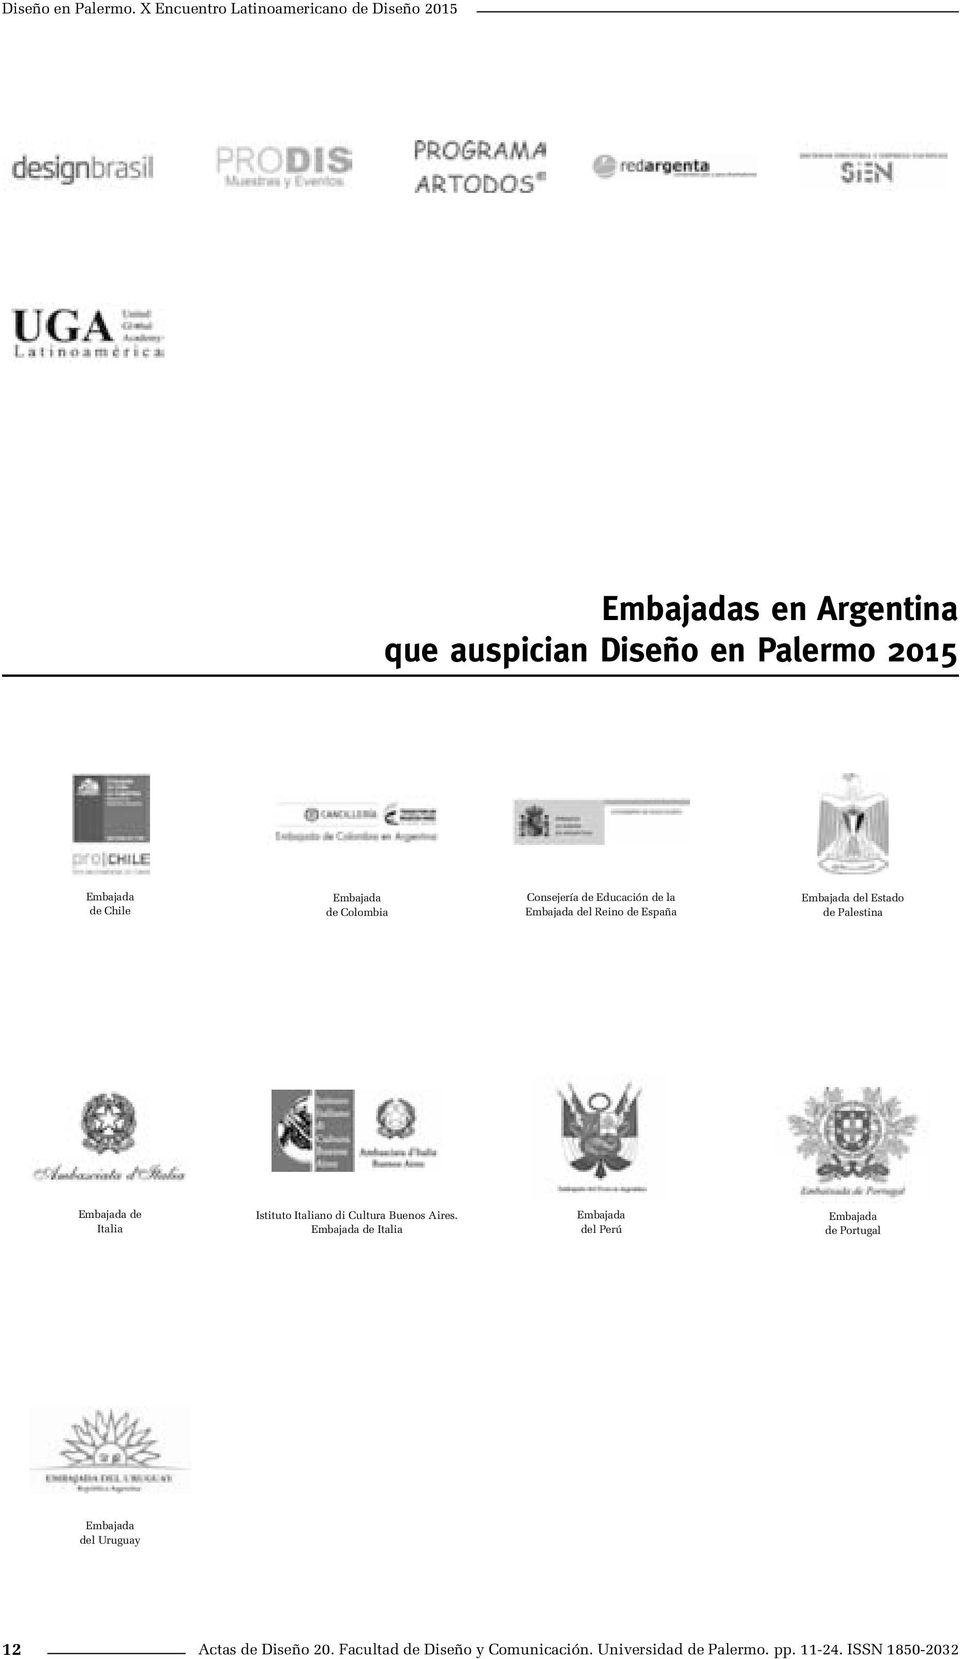 Embajada de Colombia Consejería de Educación de la Embajada del Reino de España Embajada del Estado de Palestina Embajada de